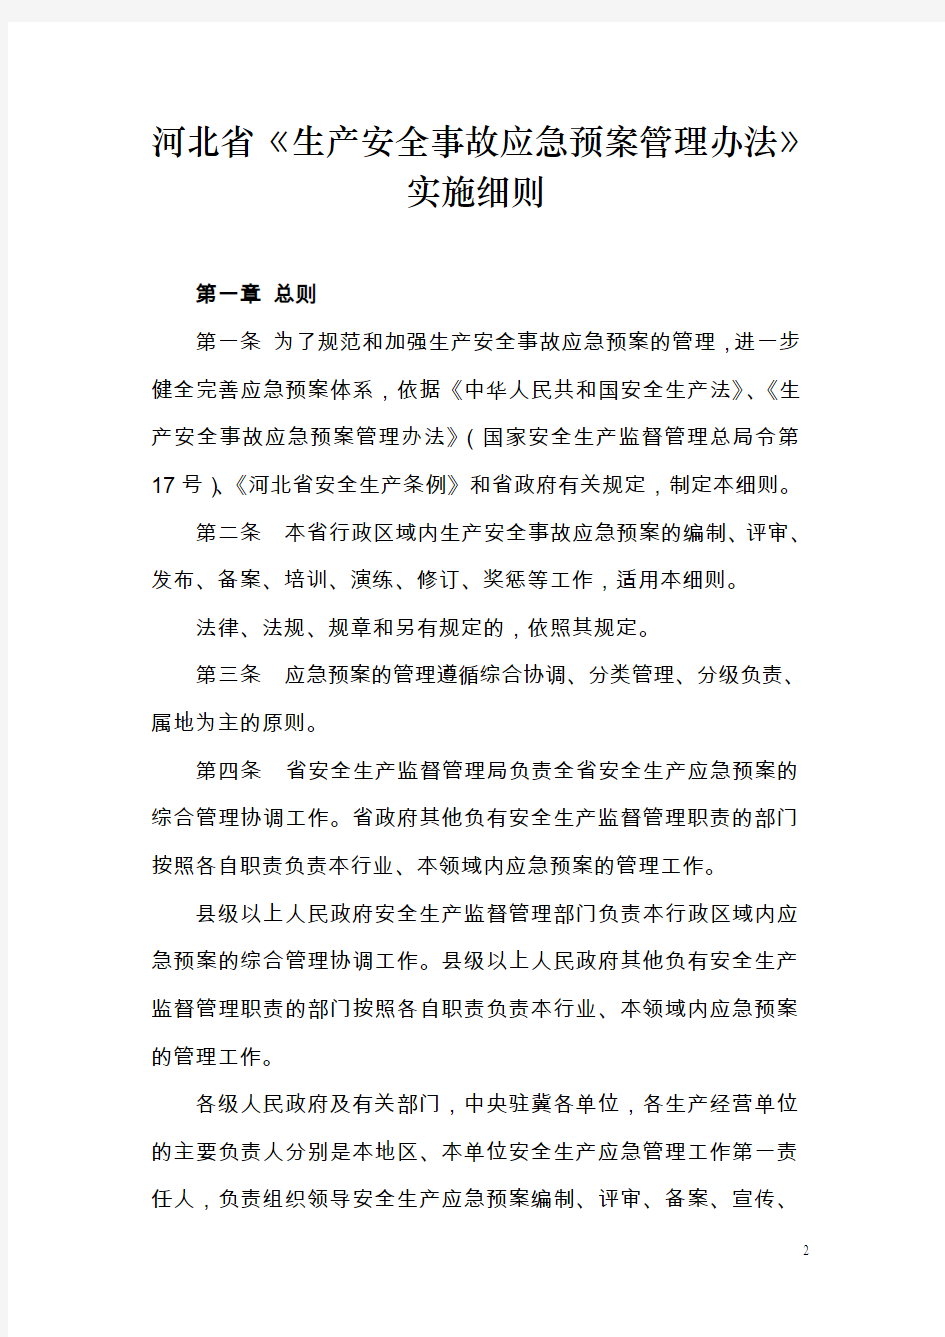 河北省〈生产安全事故应急预案管理办法〉实施细则